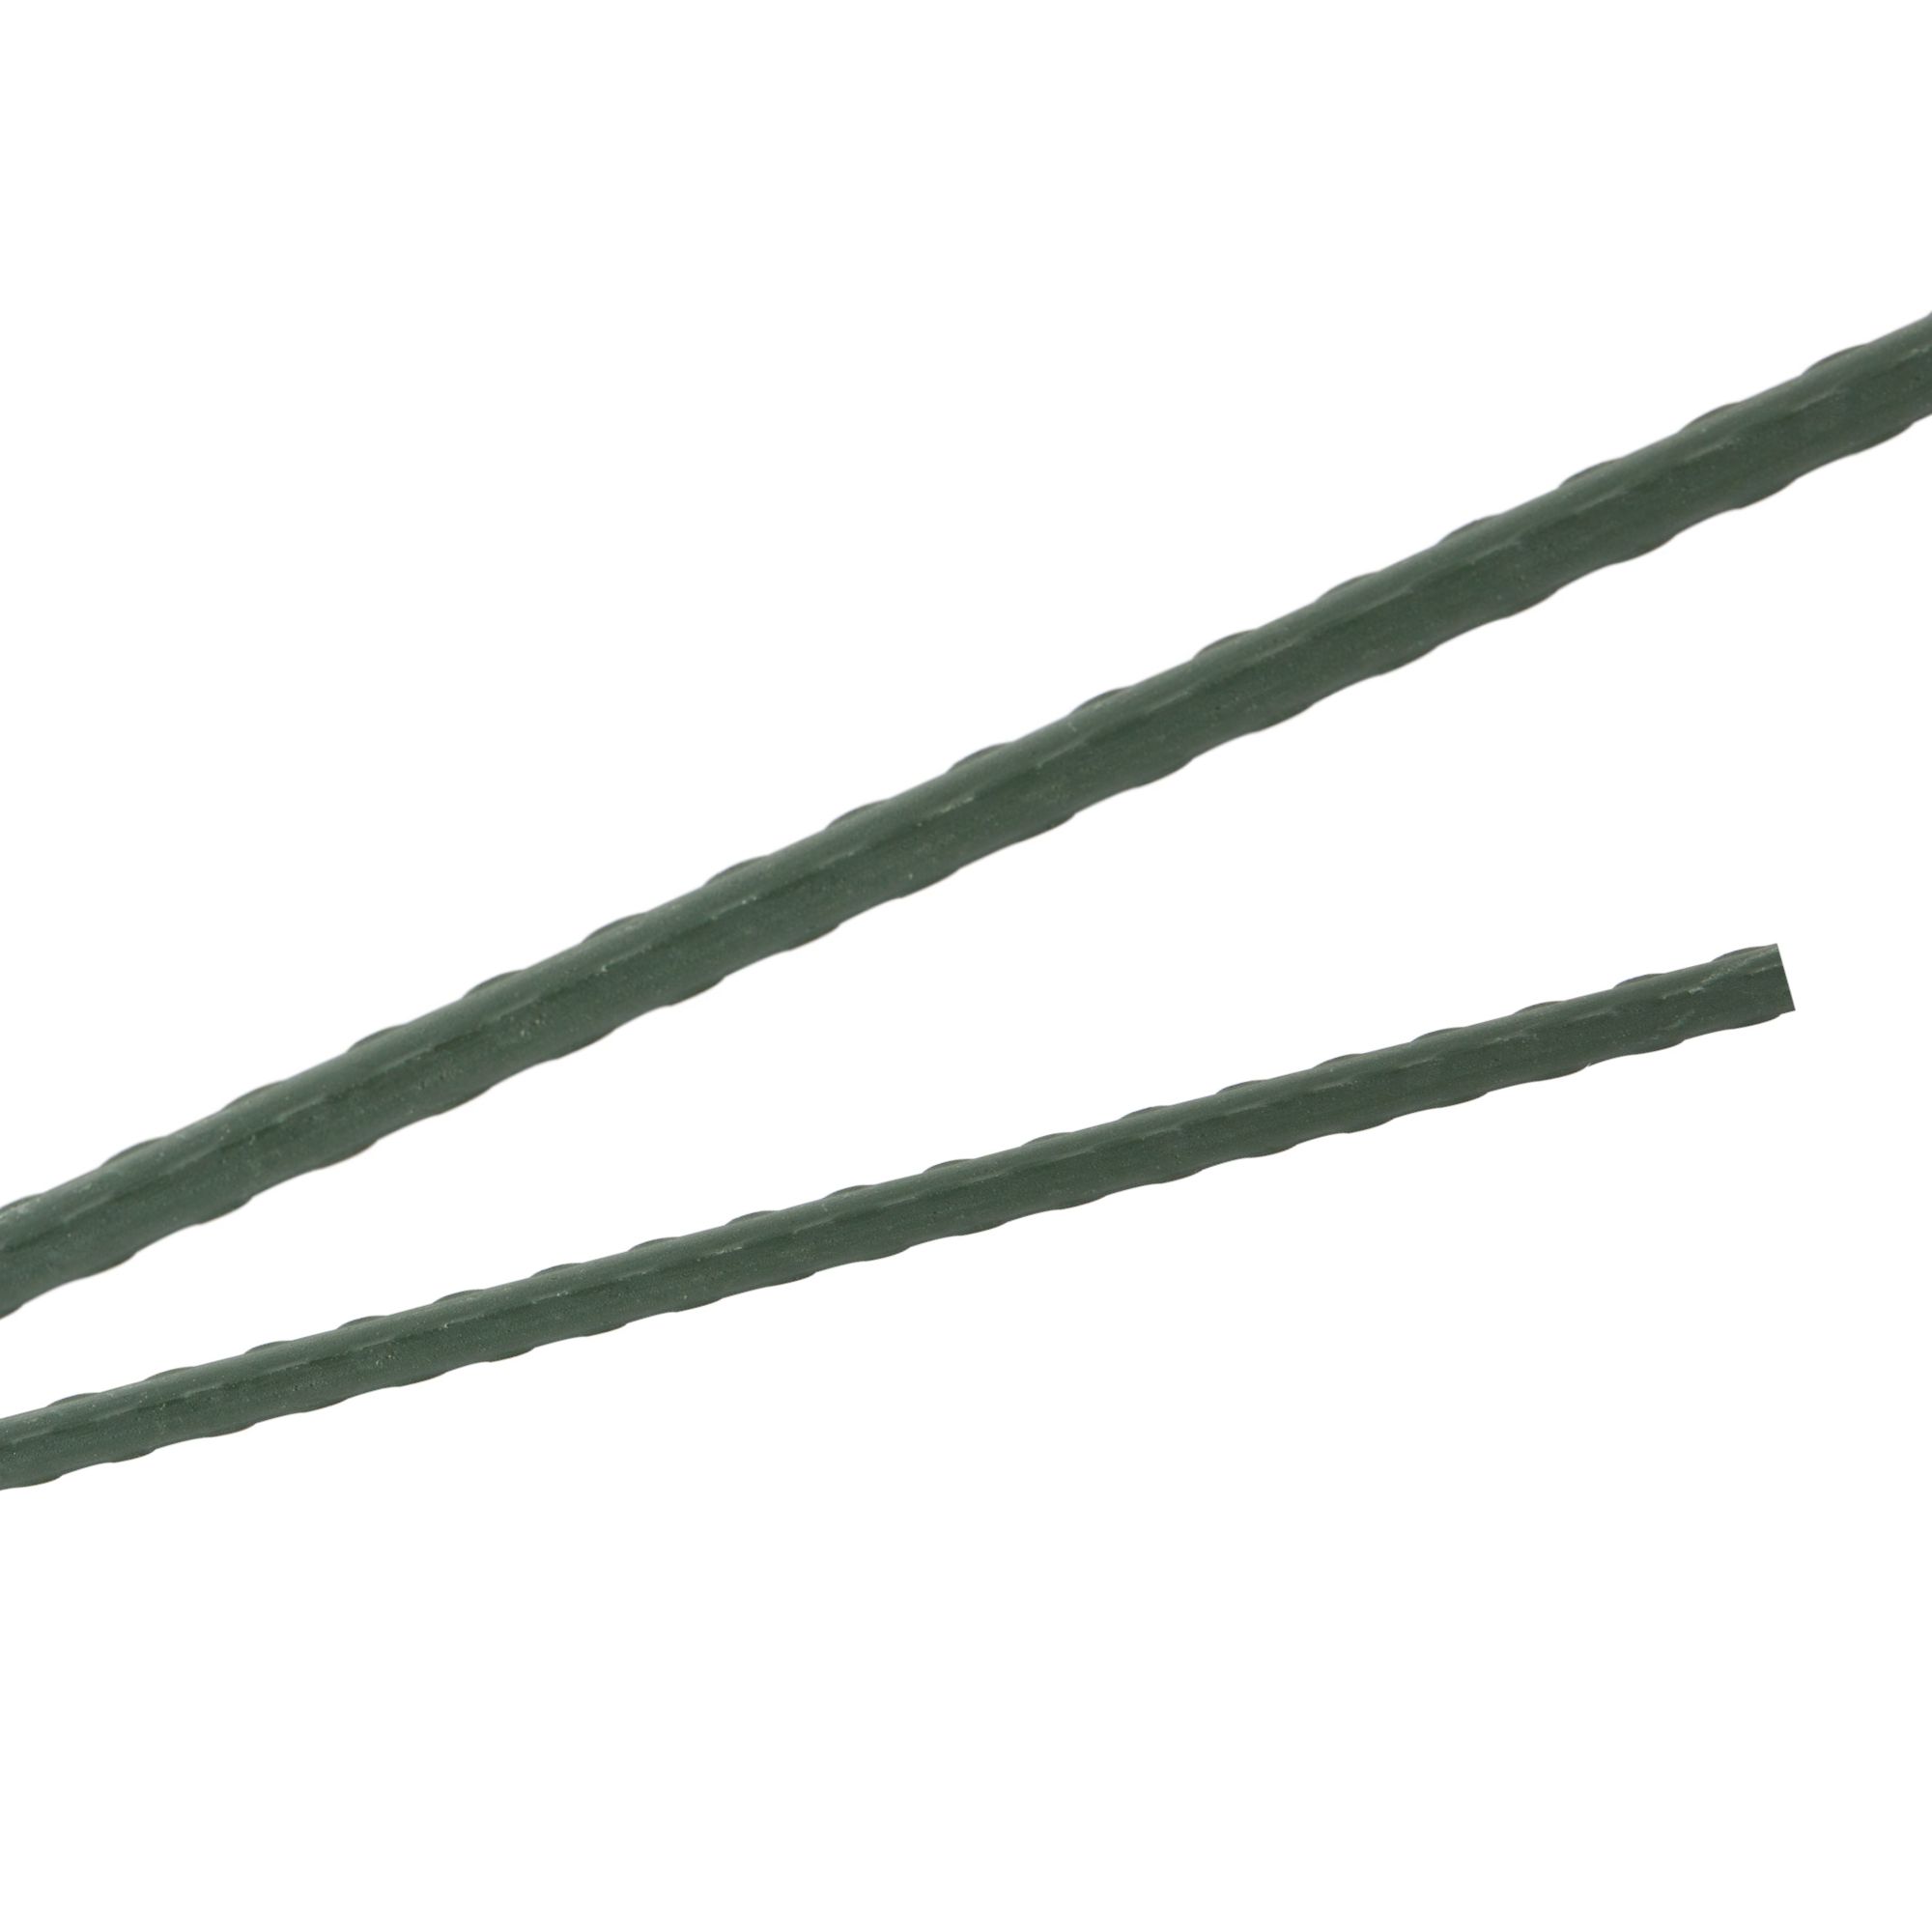 Tyč podpěrná, 20mm, 150cm, kov+PVC, zelená 0.280000 Kg GIGA Sklad20 211769 43